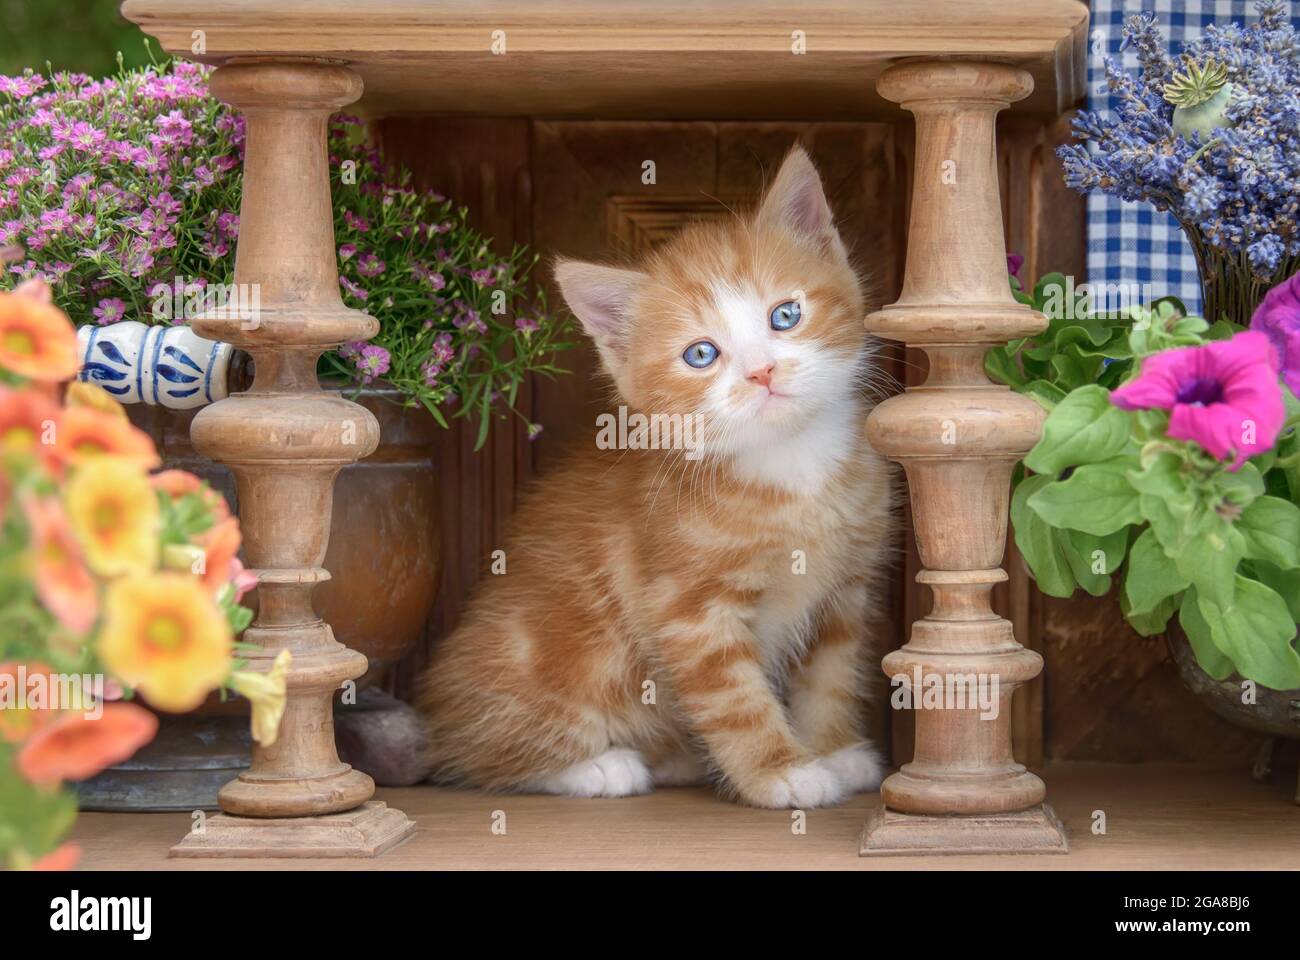 Niedliches rot-tabby-weißes Kätzchen mit schönen blauen Augen, das in einem alten Holzdrehschrank mit Blumen sitzt und neugierig zuschaut Stockfoto